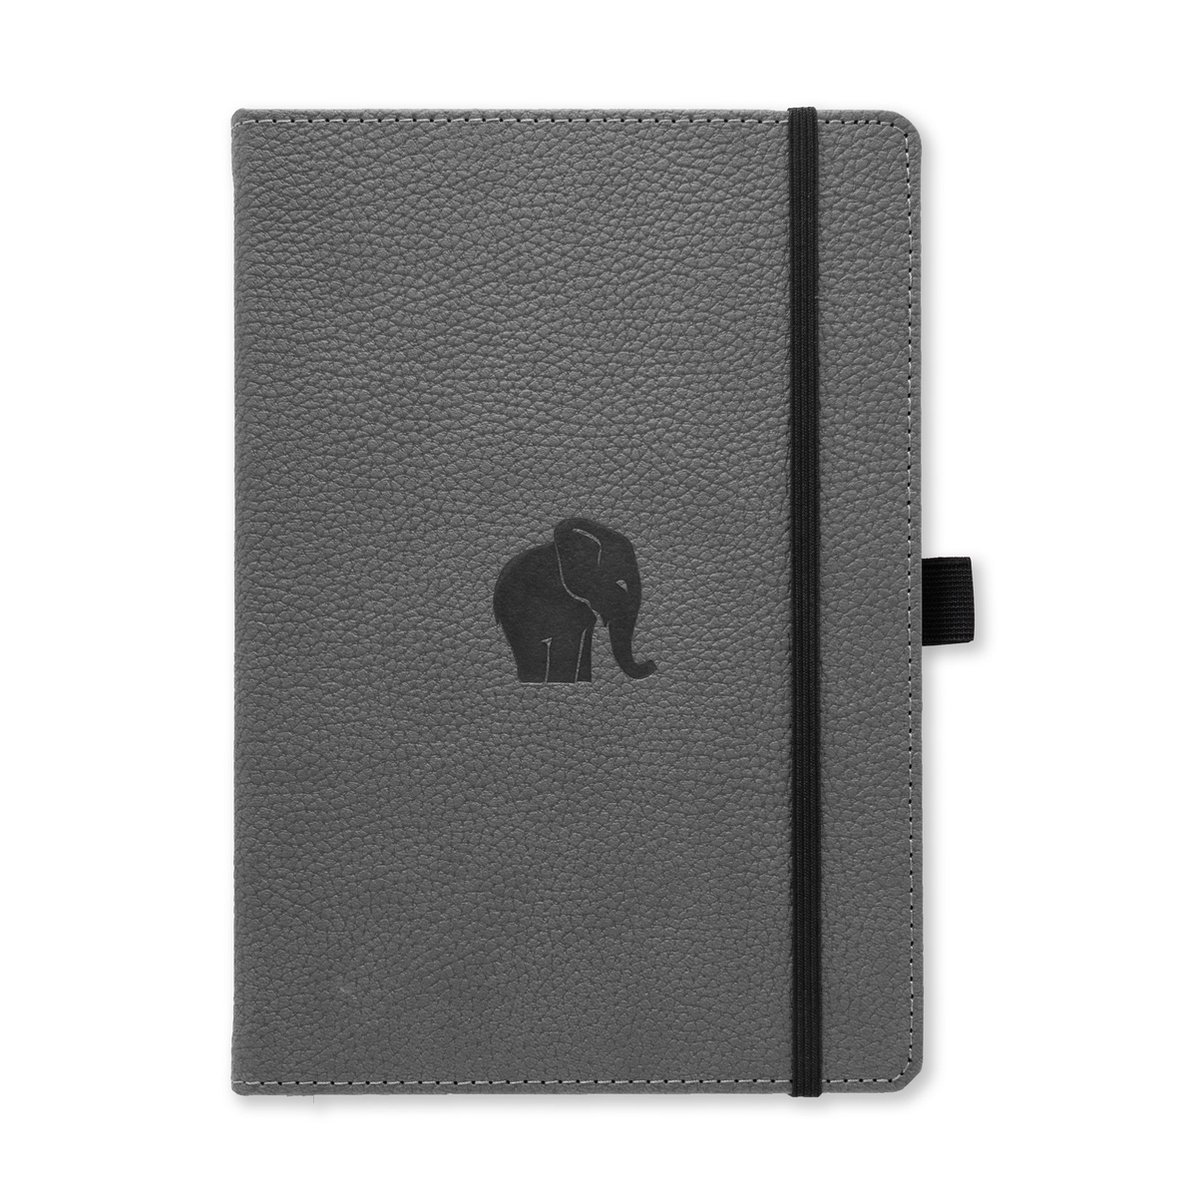 Dingbats* Wildlife A5 Notitieboek - Grey Elephant Lijntjes - Bullet Journal met 100 gsm Inktvrij Papier - Schetsboek met Harde Kaft, Binnenvak, Elastische Sluiting en Bladwijzer